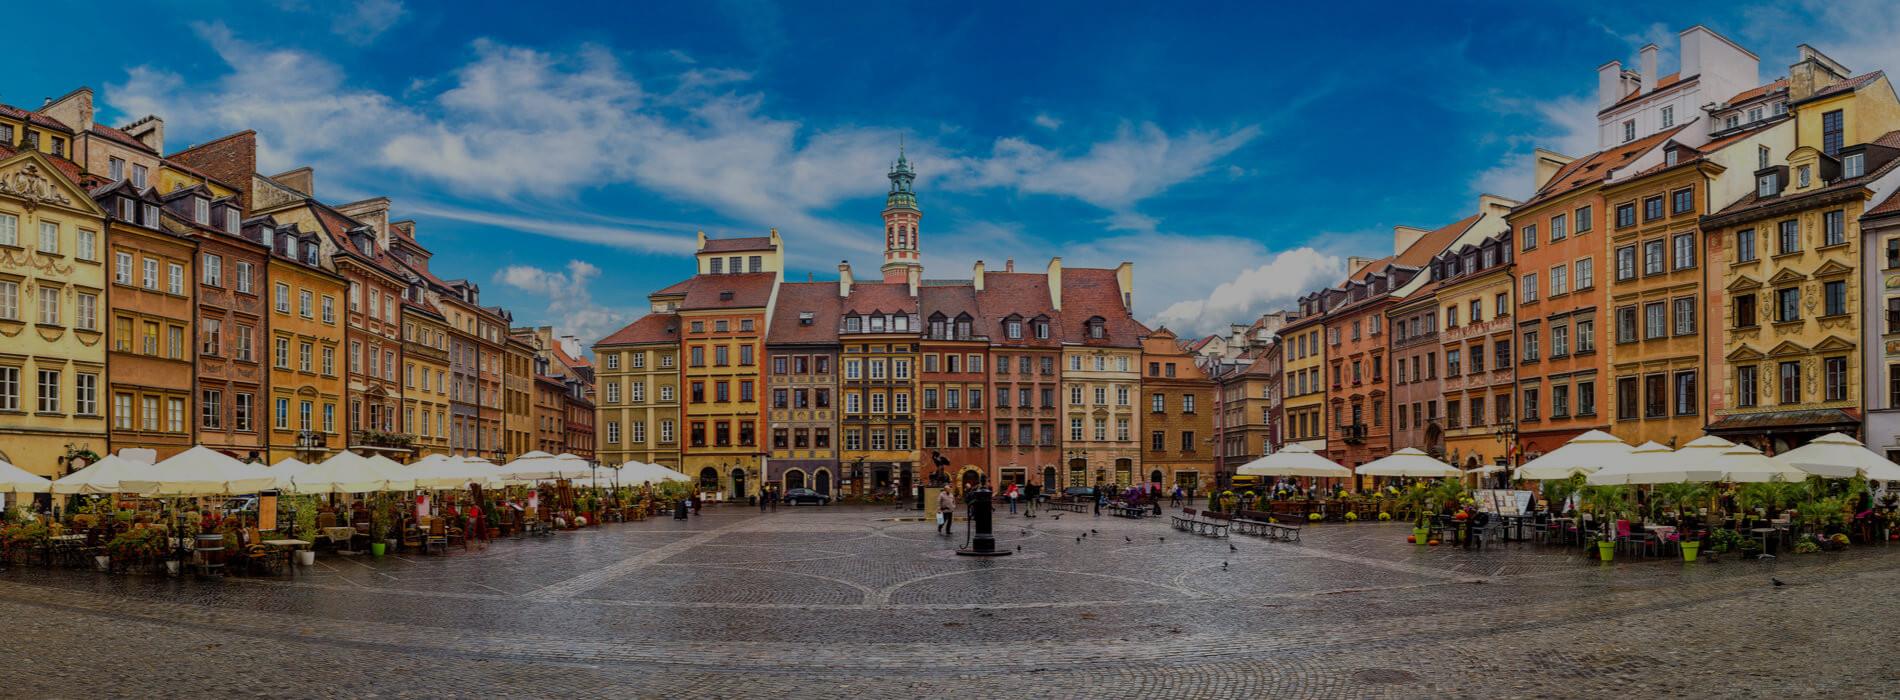 Test NIFTY Warszawa - gdzie zrobić badanie w Warszawie?